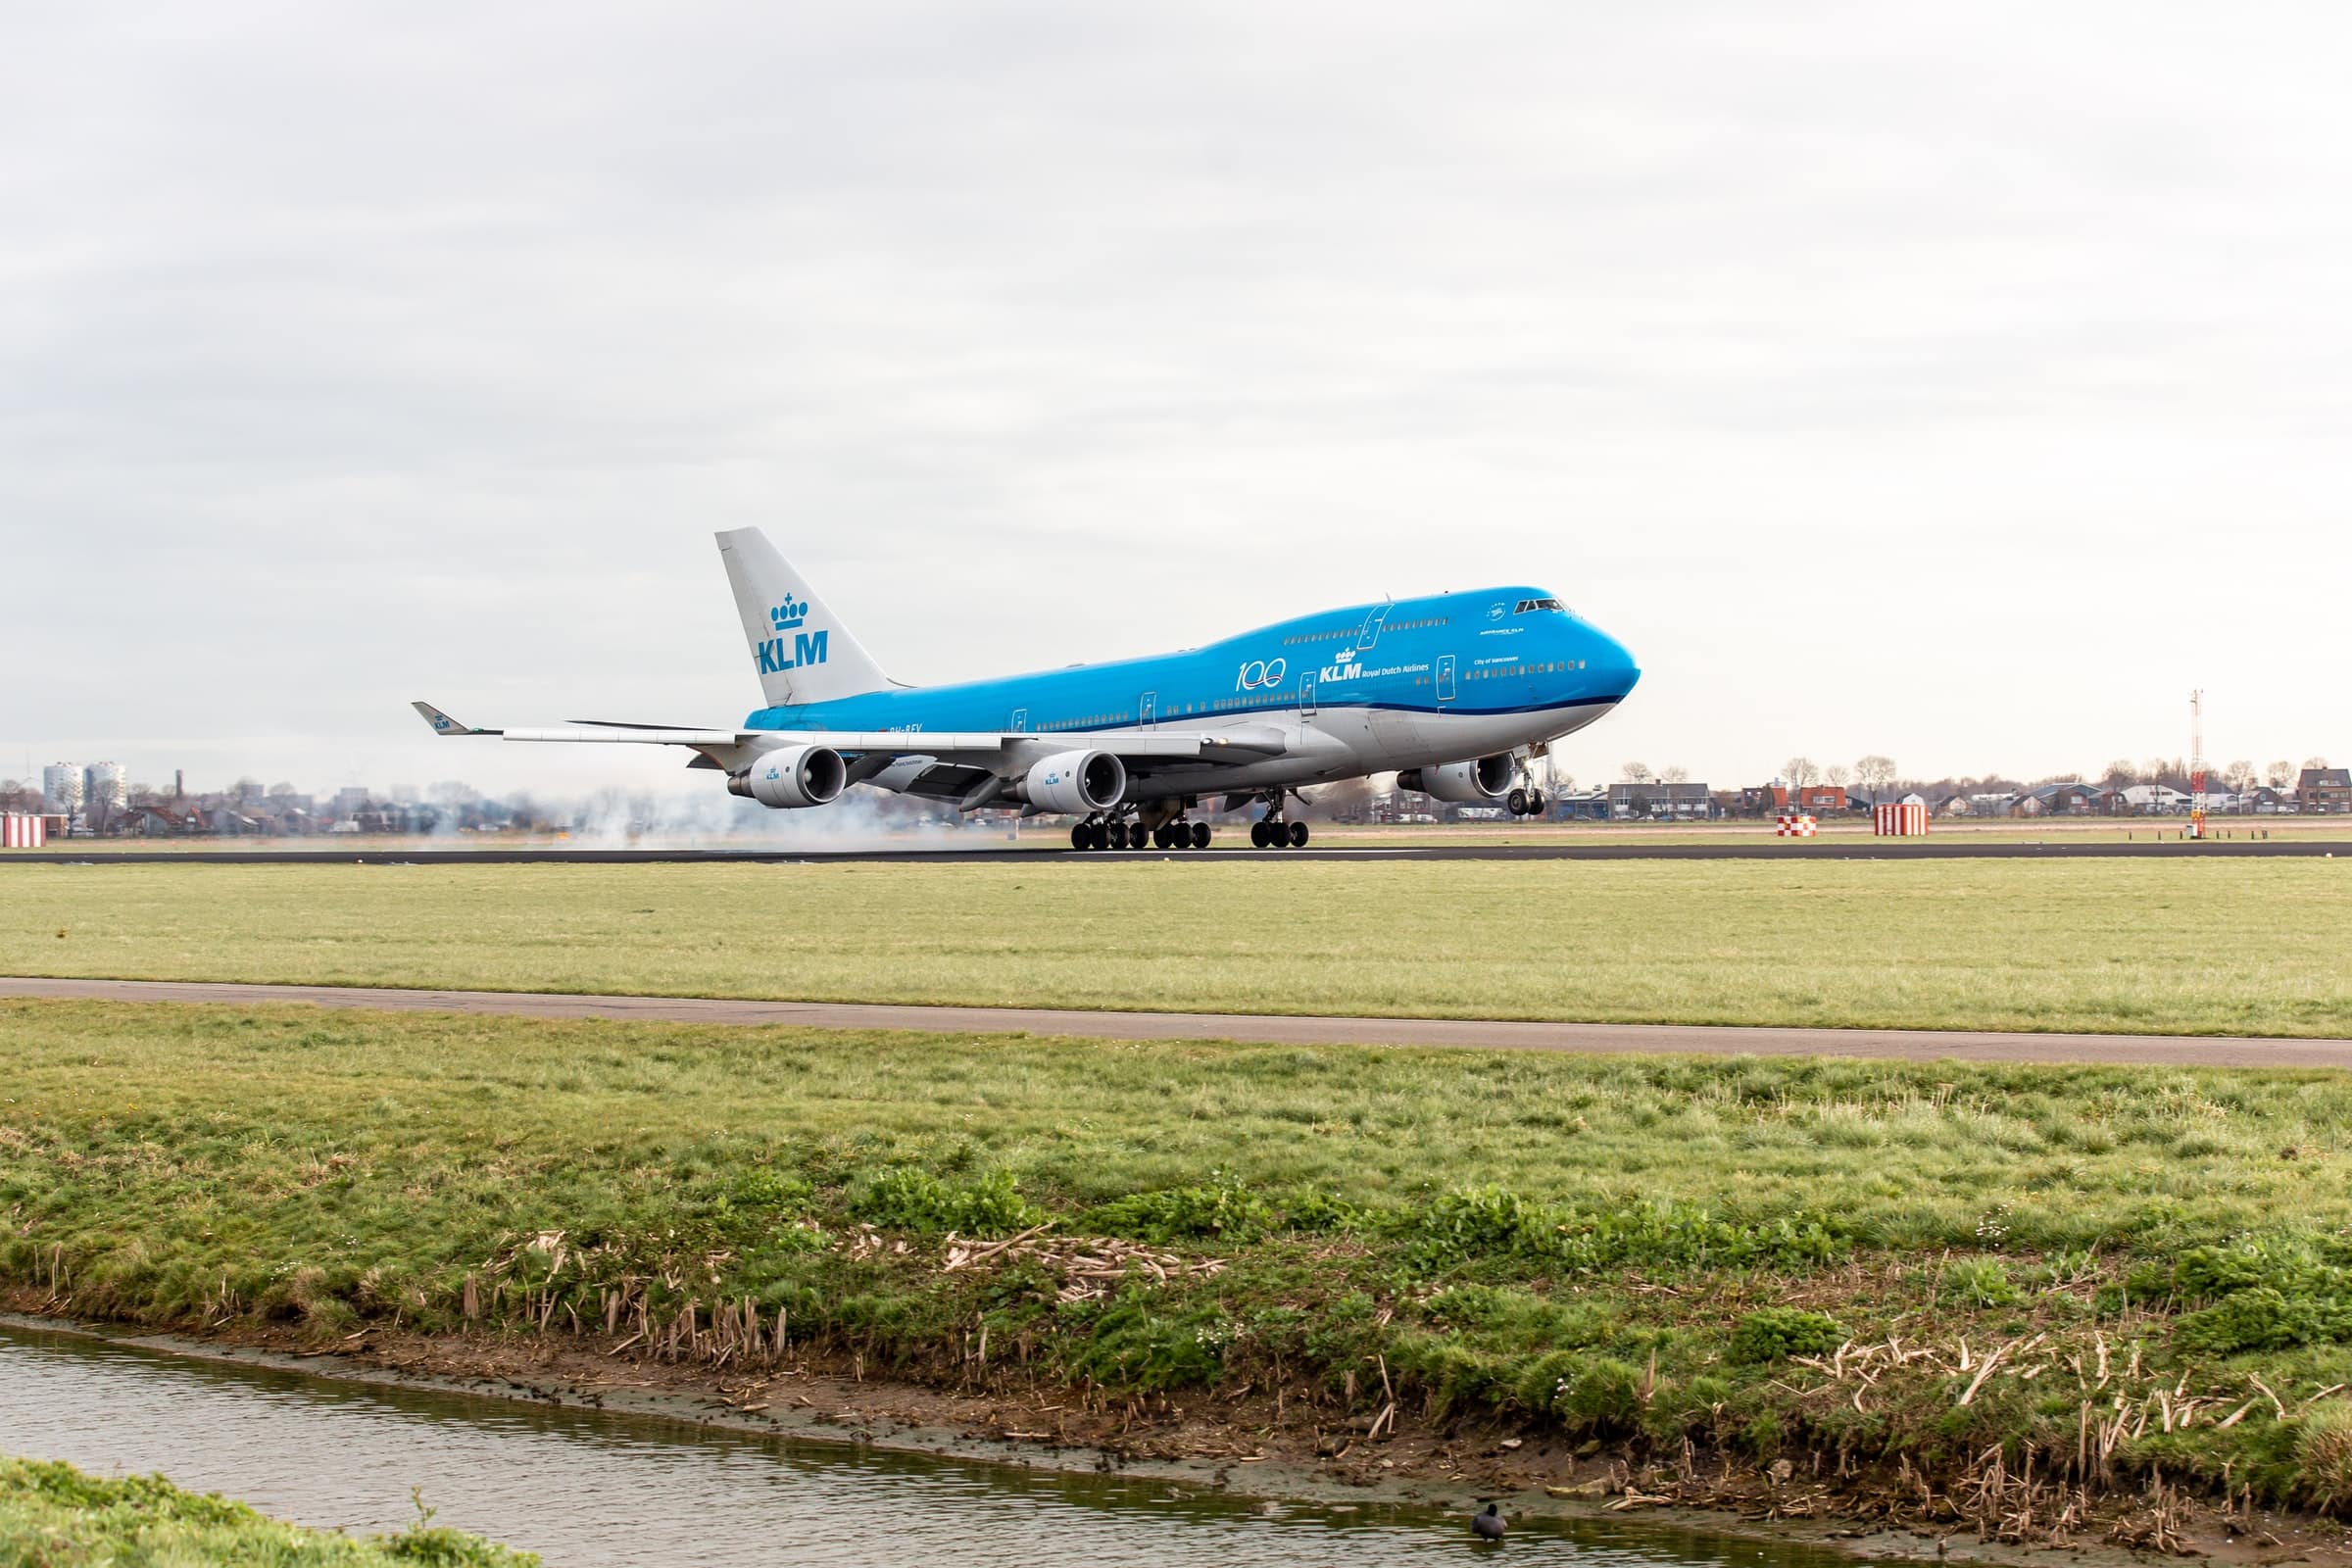 Verdensrejsende ankommer til Schiphol